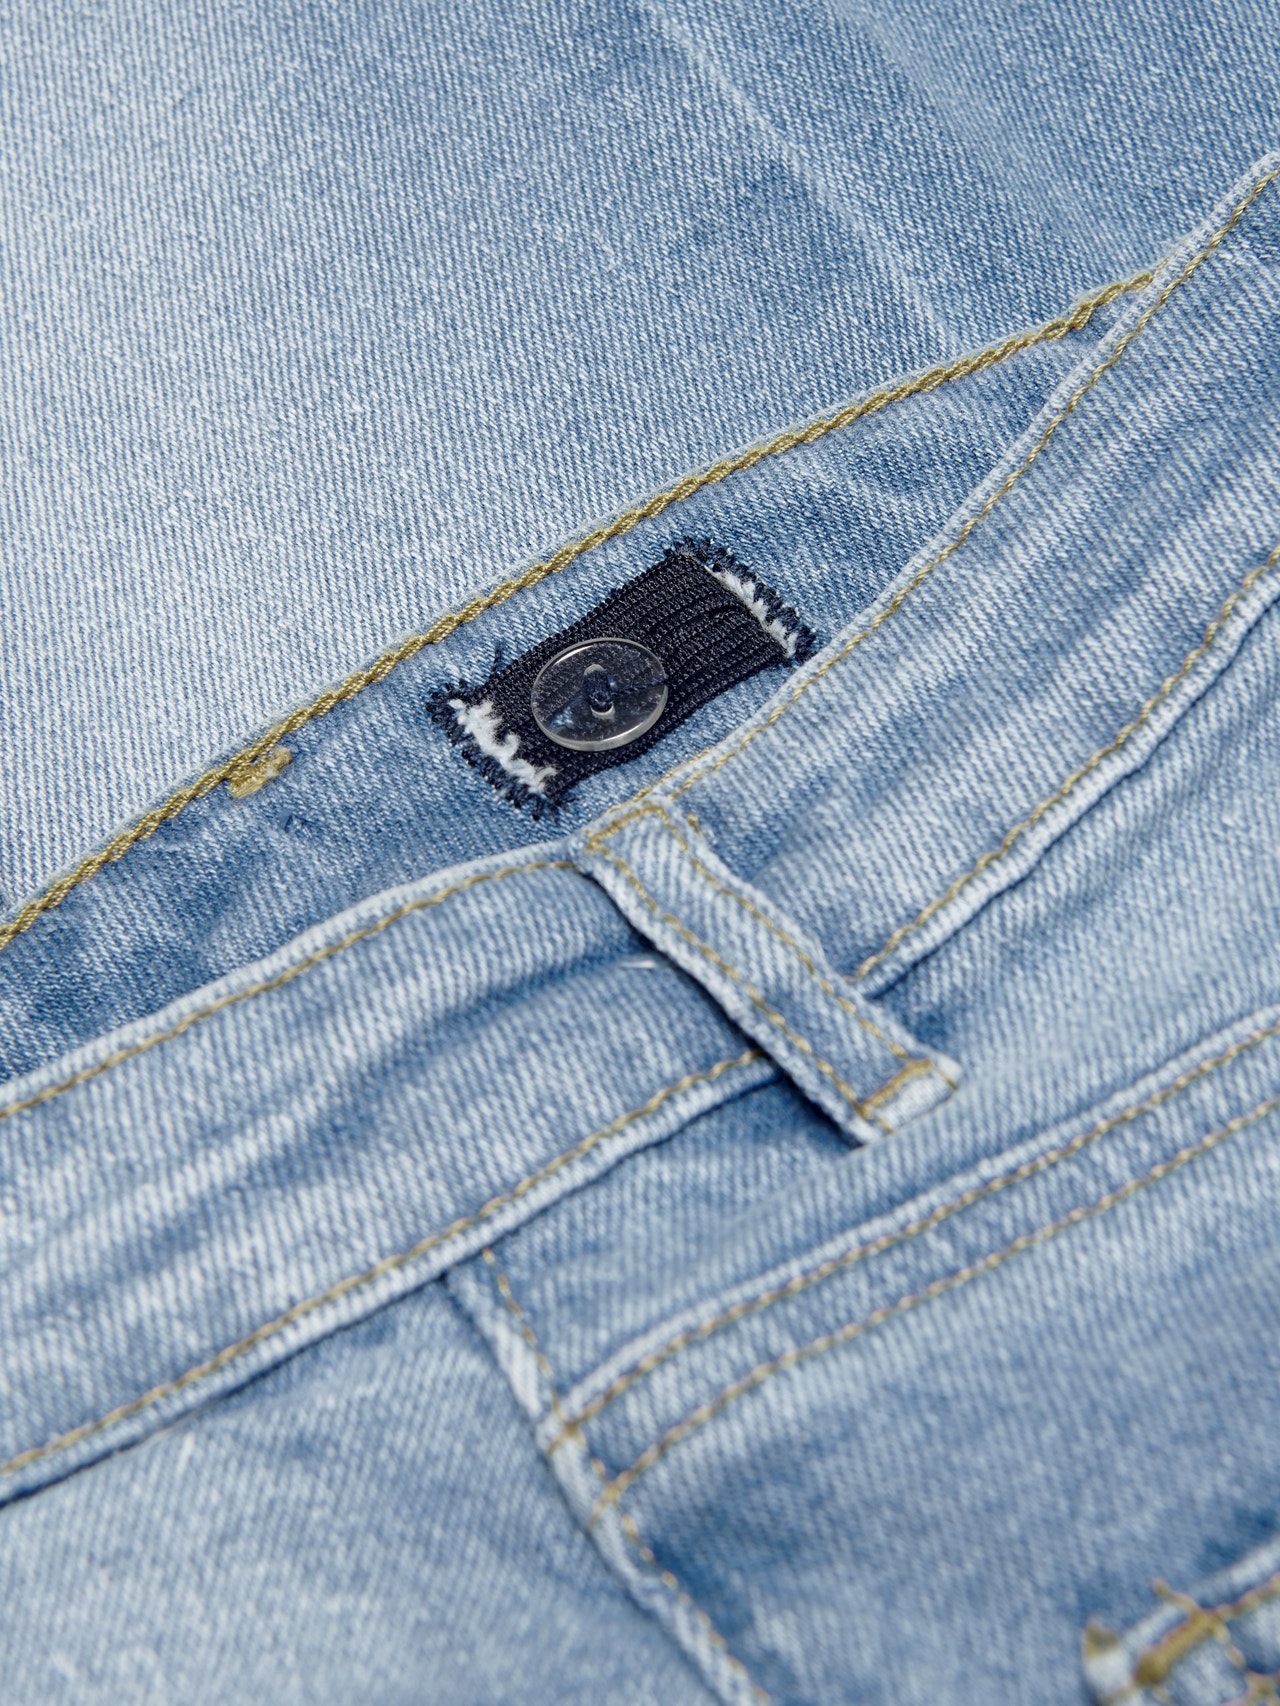 ONLY Baggy Fit Regular waist Jeans -Light Blue Denim - 15244468